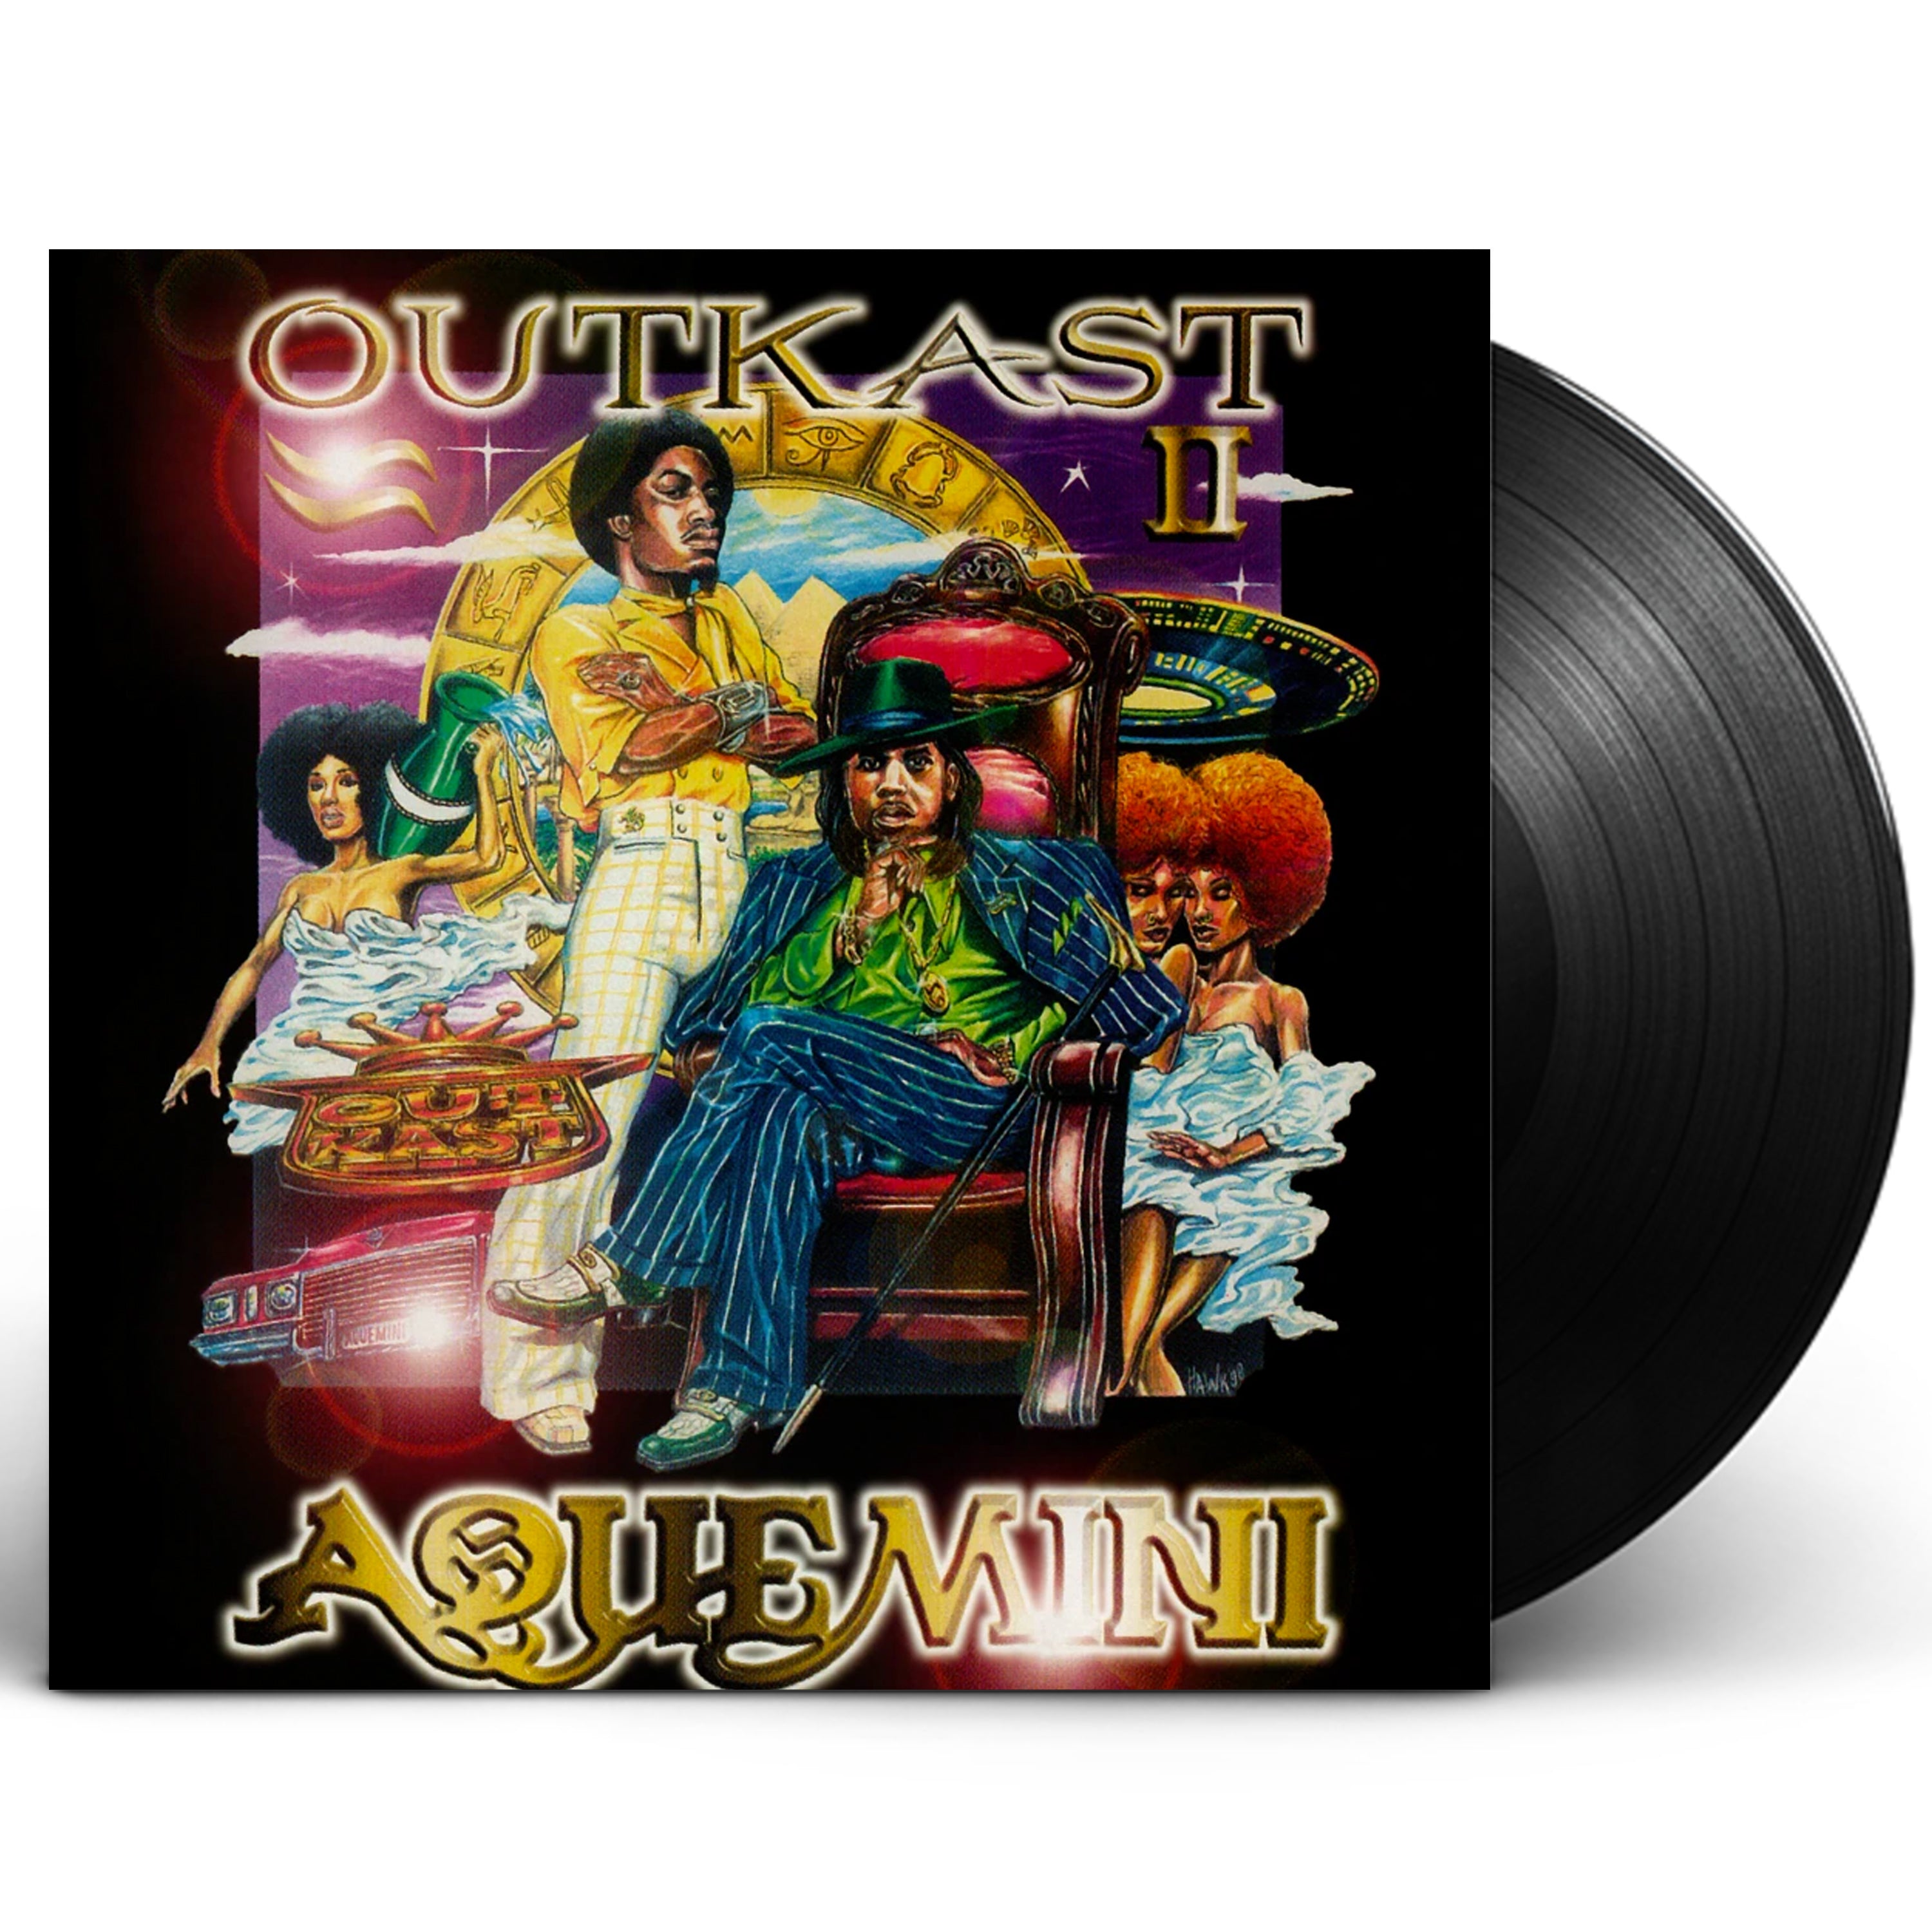 OutKast "Aquemini" Vinyl